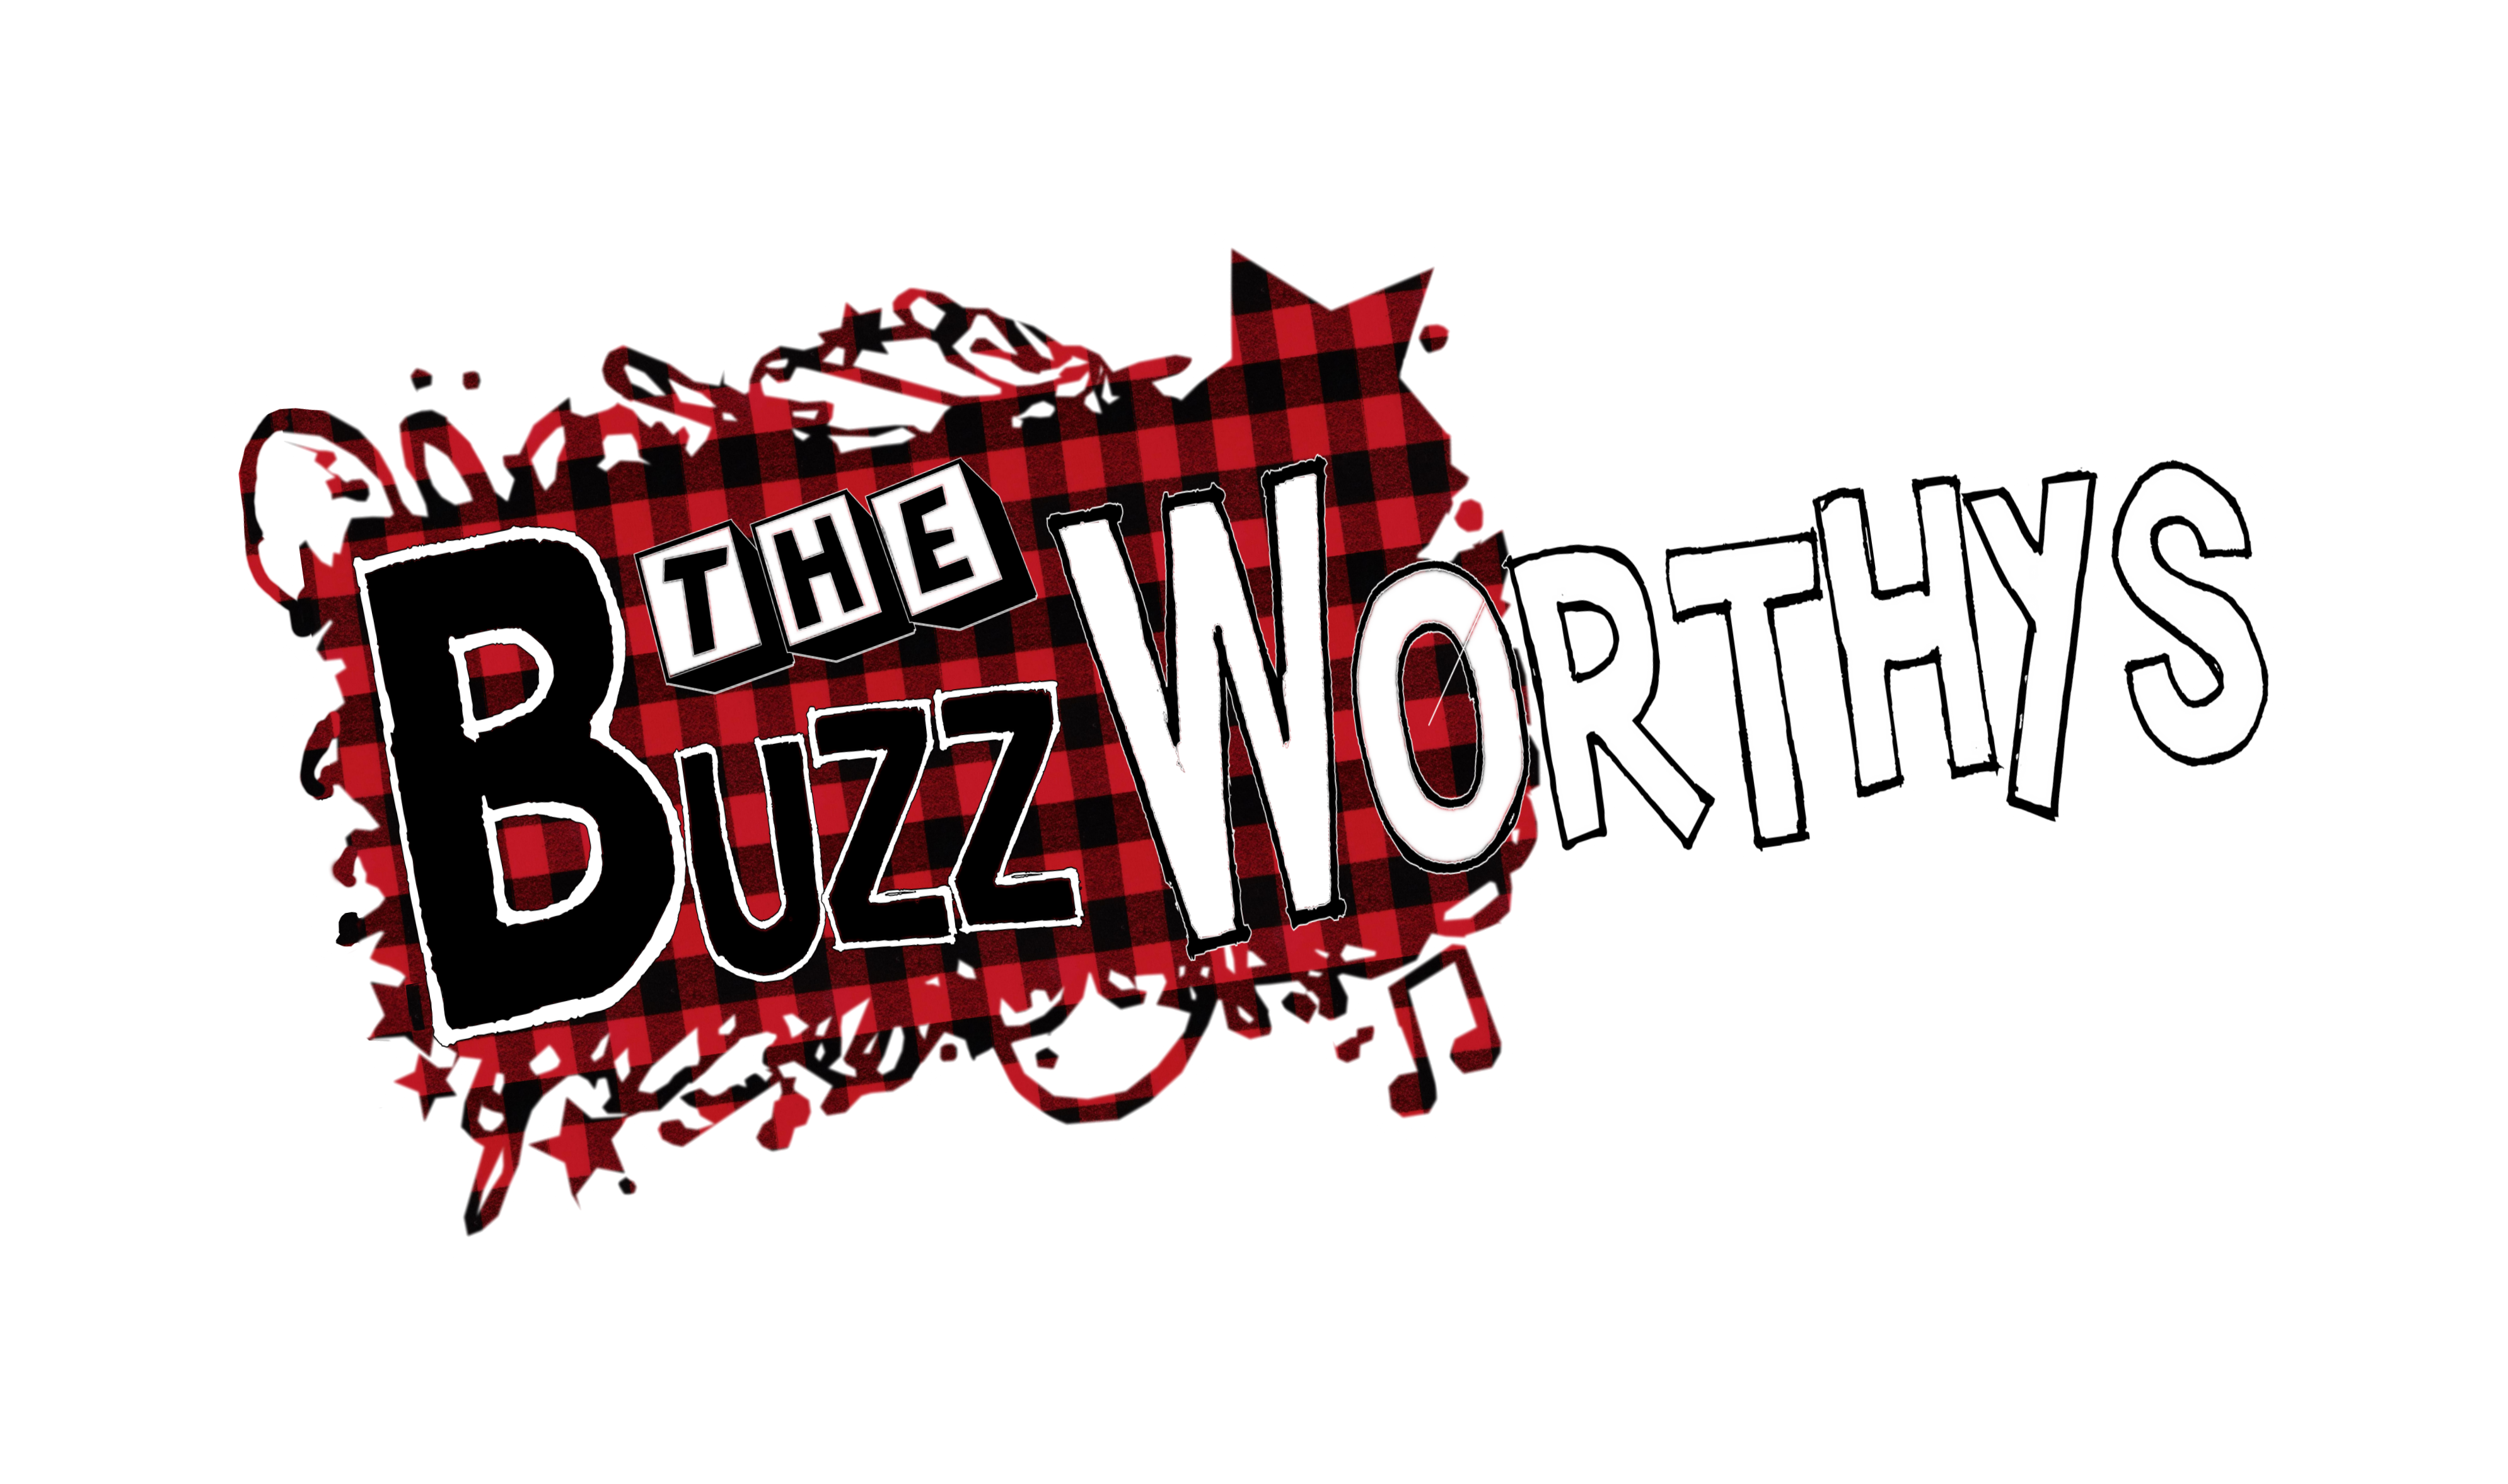 The Buzz Worthys